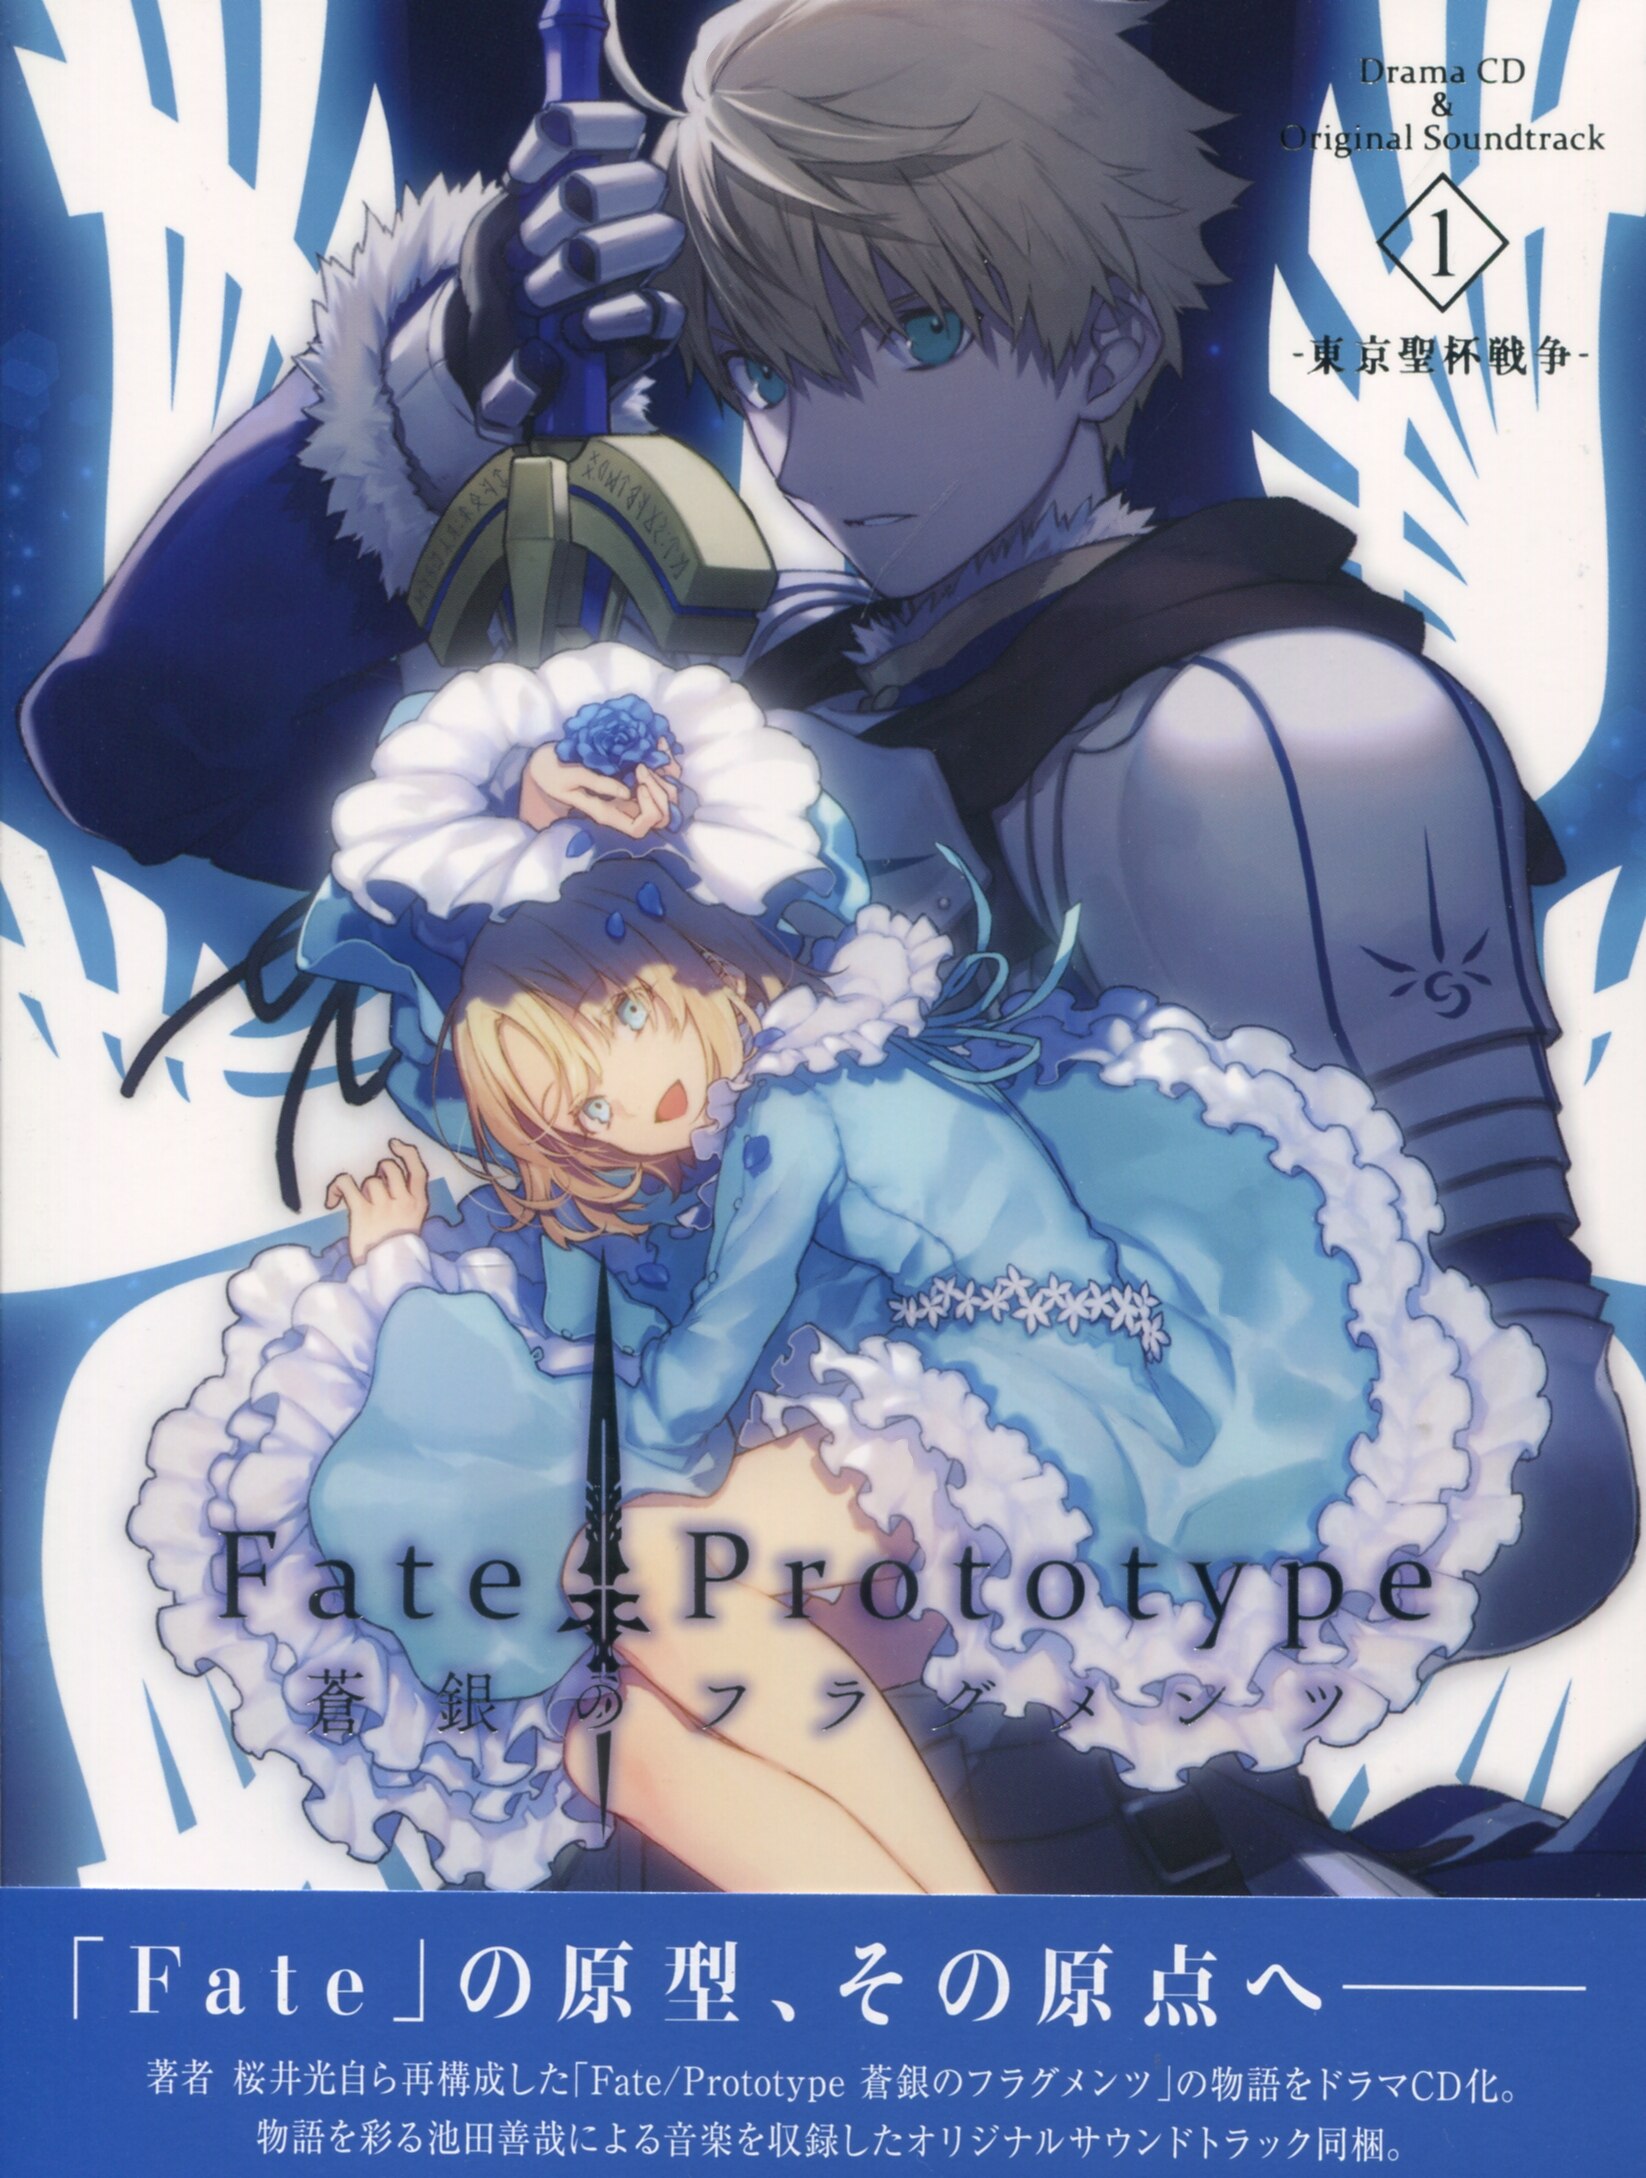 ゲームcd Fate Prototype 蒼銀のフラグメンツ ドラマcd オリジナルサウンドトラック Vol 1 まんだらけ Mandarake